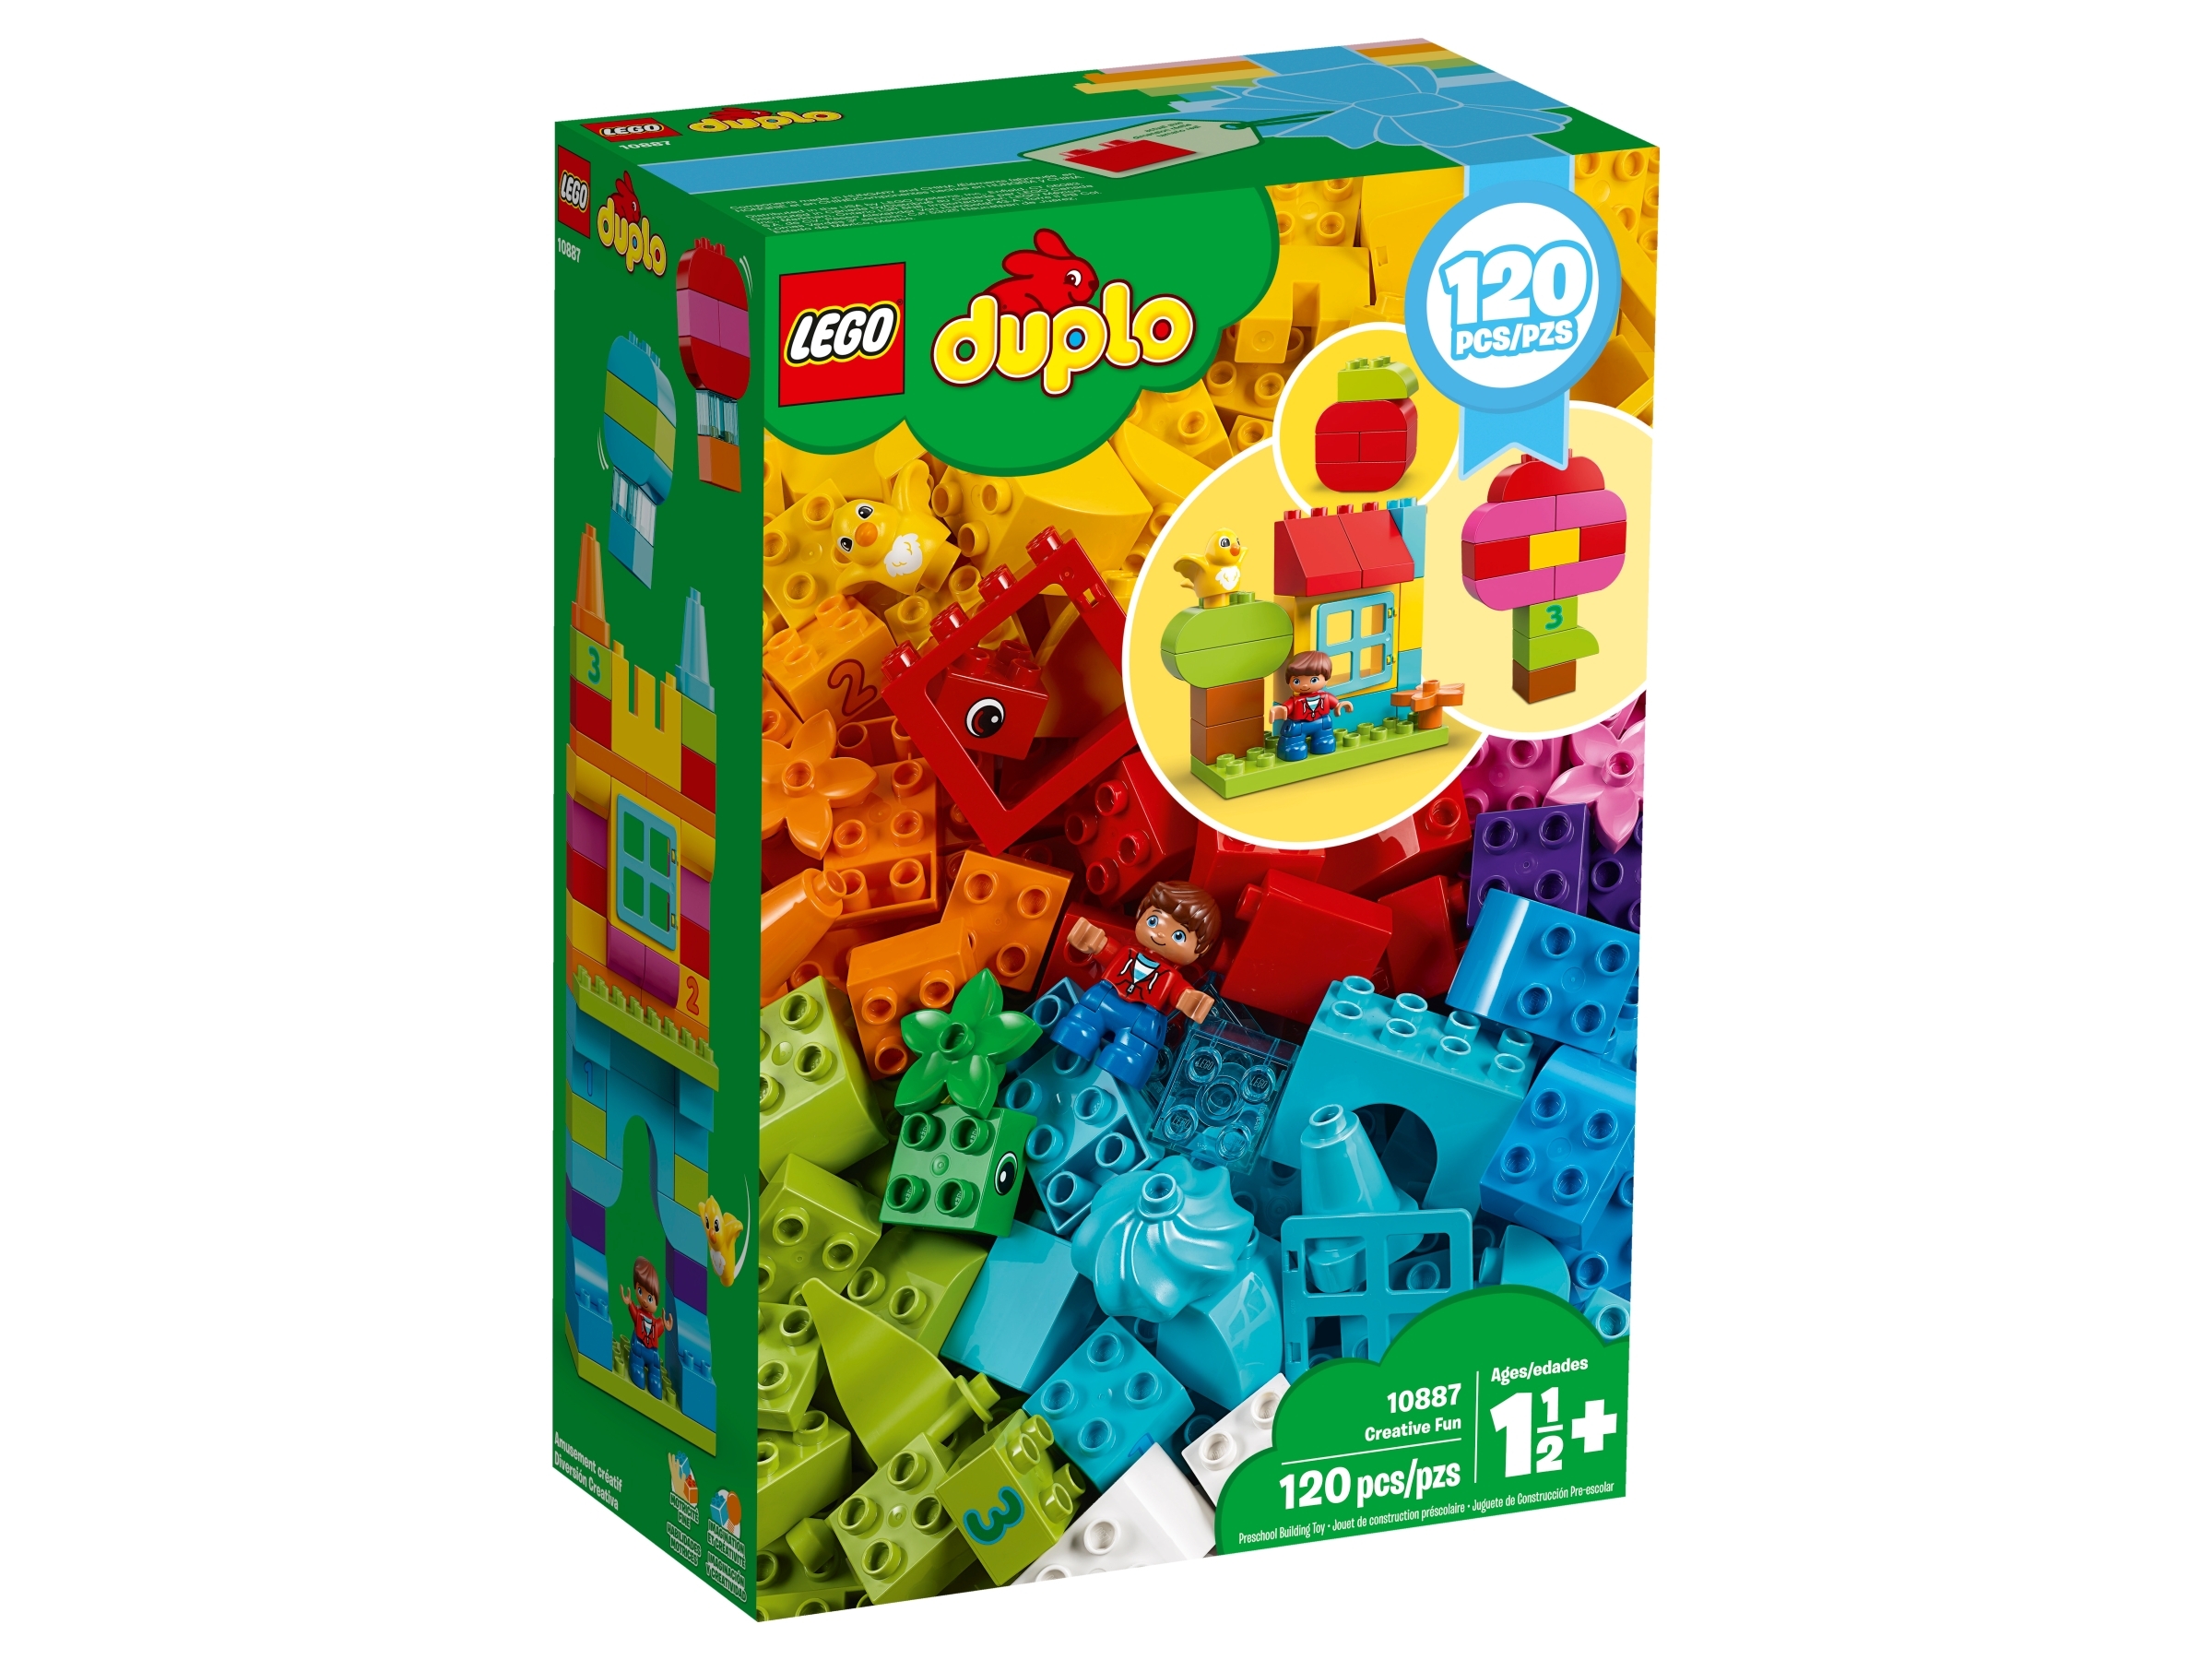 speel piano verteren kasteel Creative Fun 10887 | DUPLO® | Buy online at the Official LEGO® Shop US